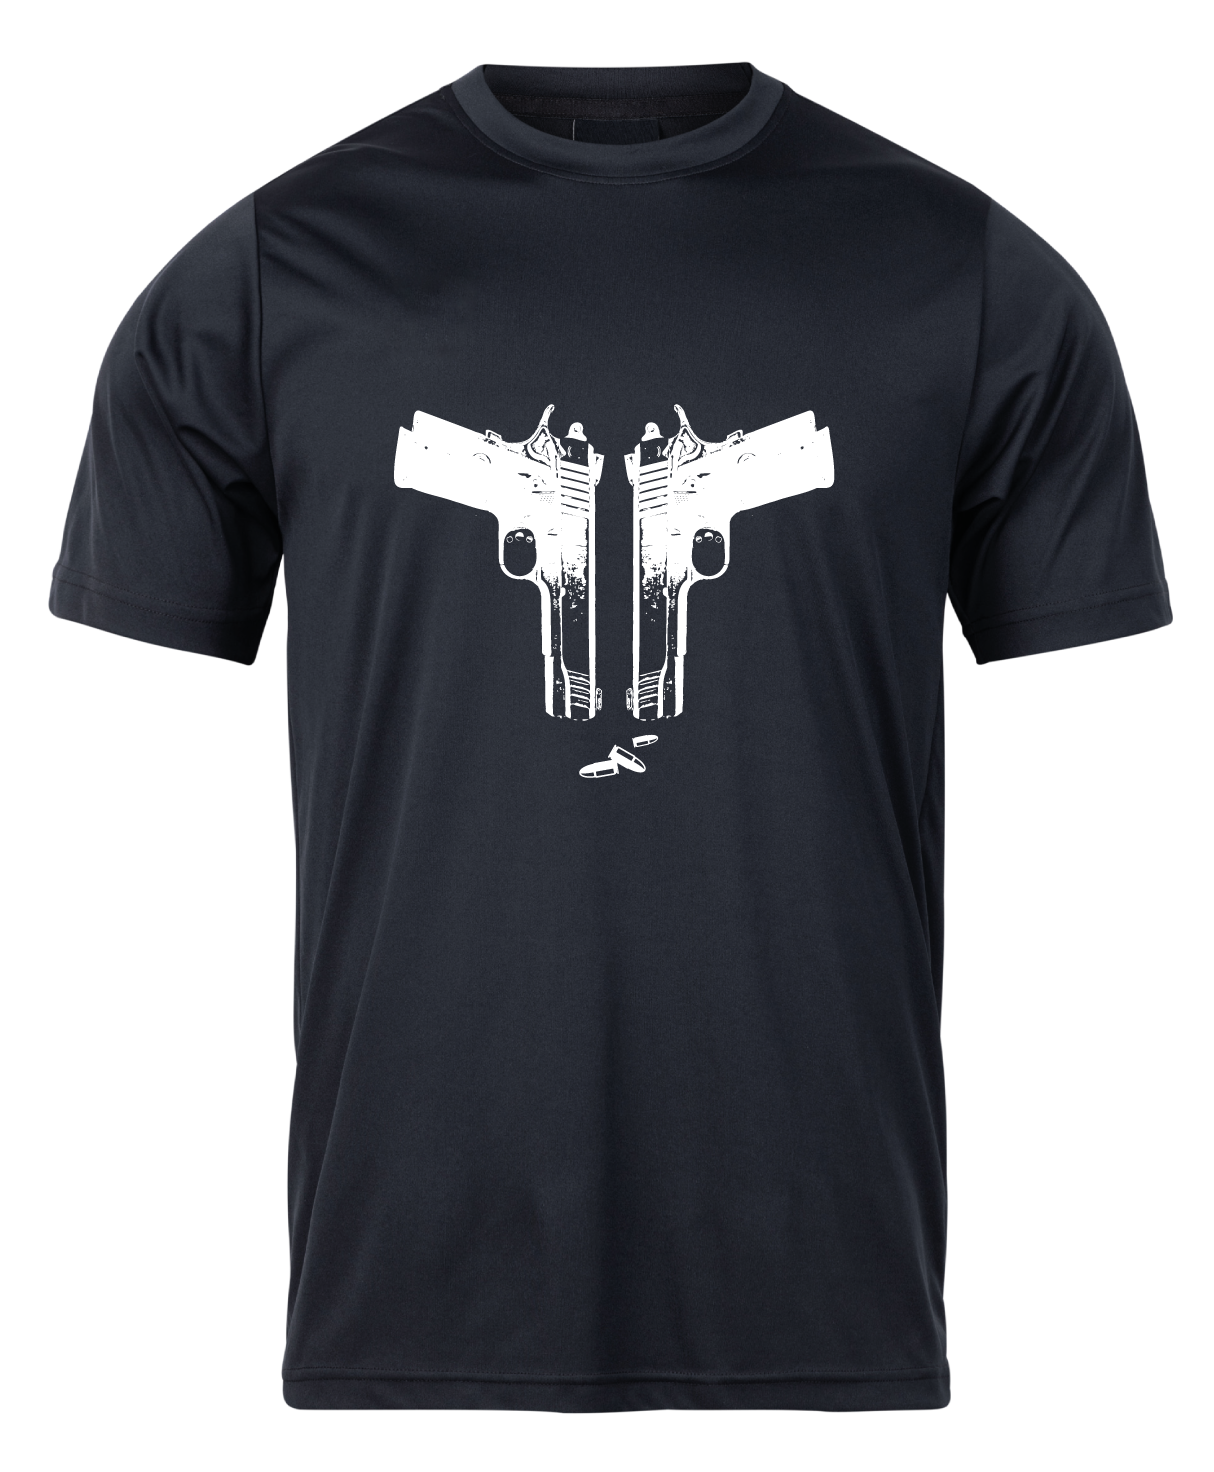 Pánske poľovnícke tričko TETRAO zbrane - čierne   M